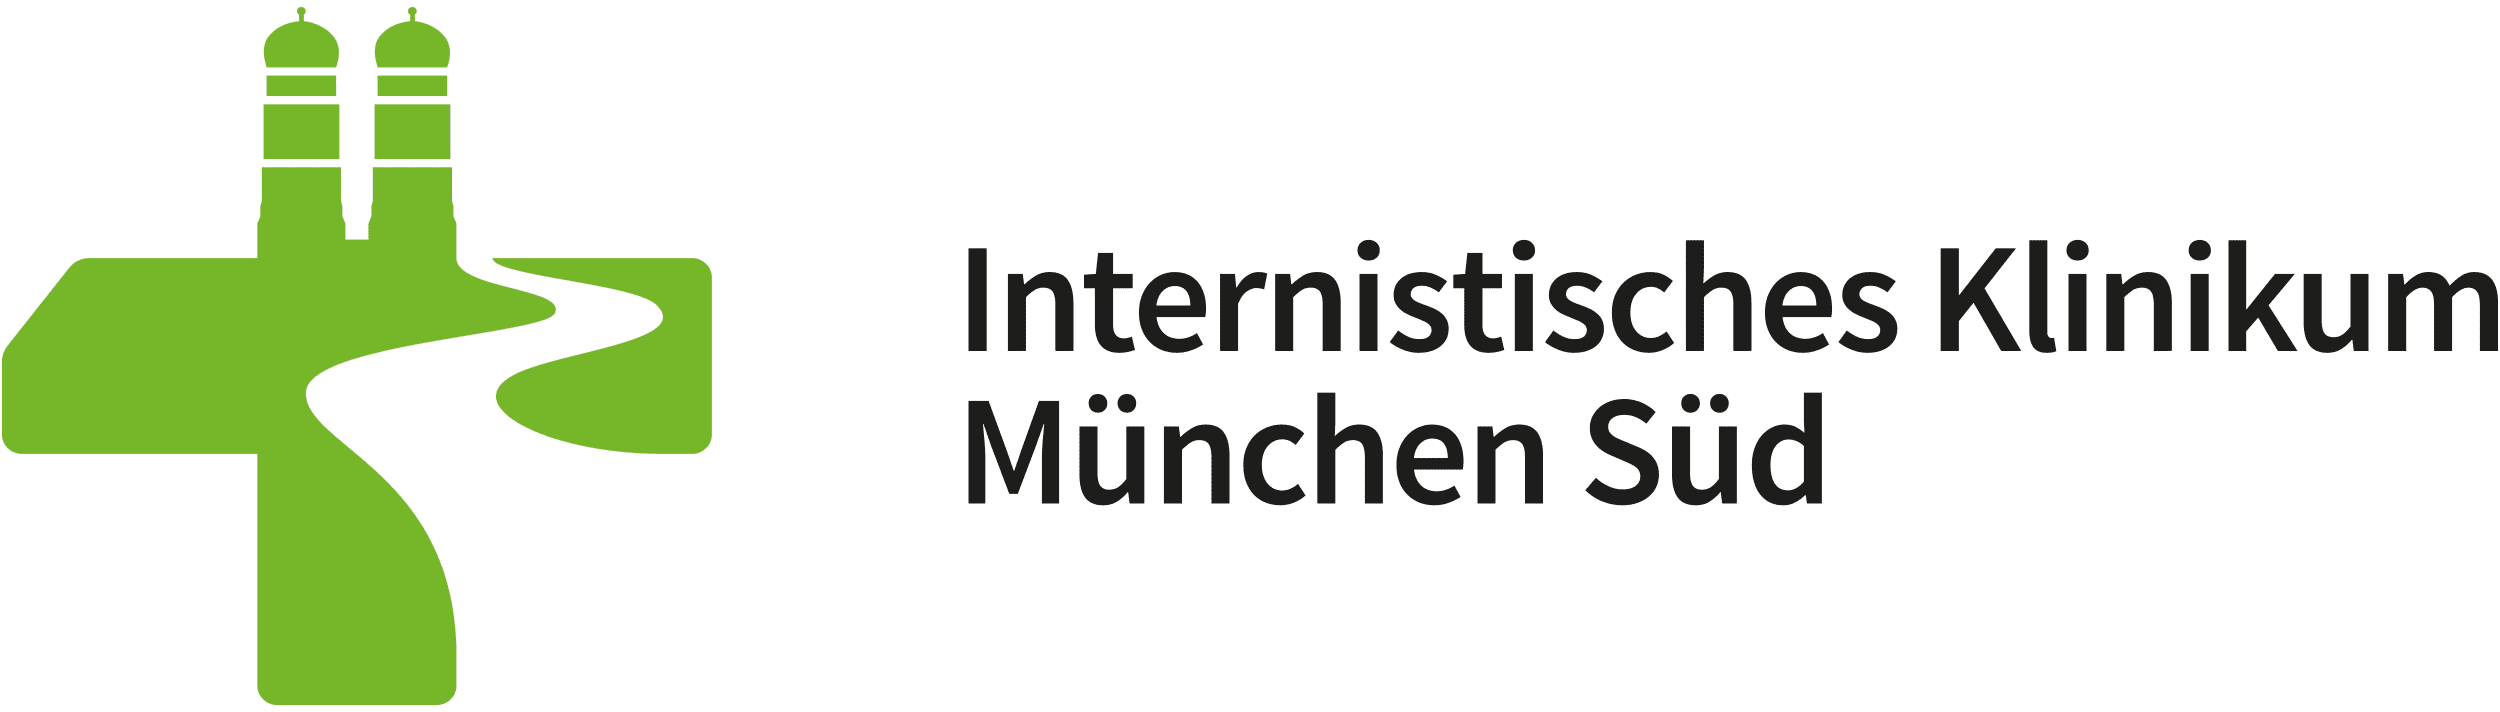 Klinikleitung - Internistisches Klinikum München Süd